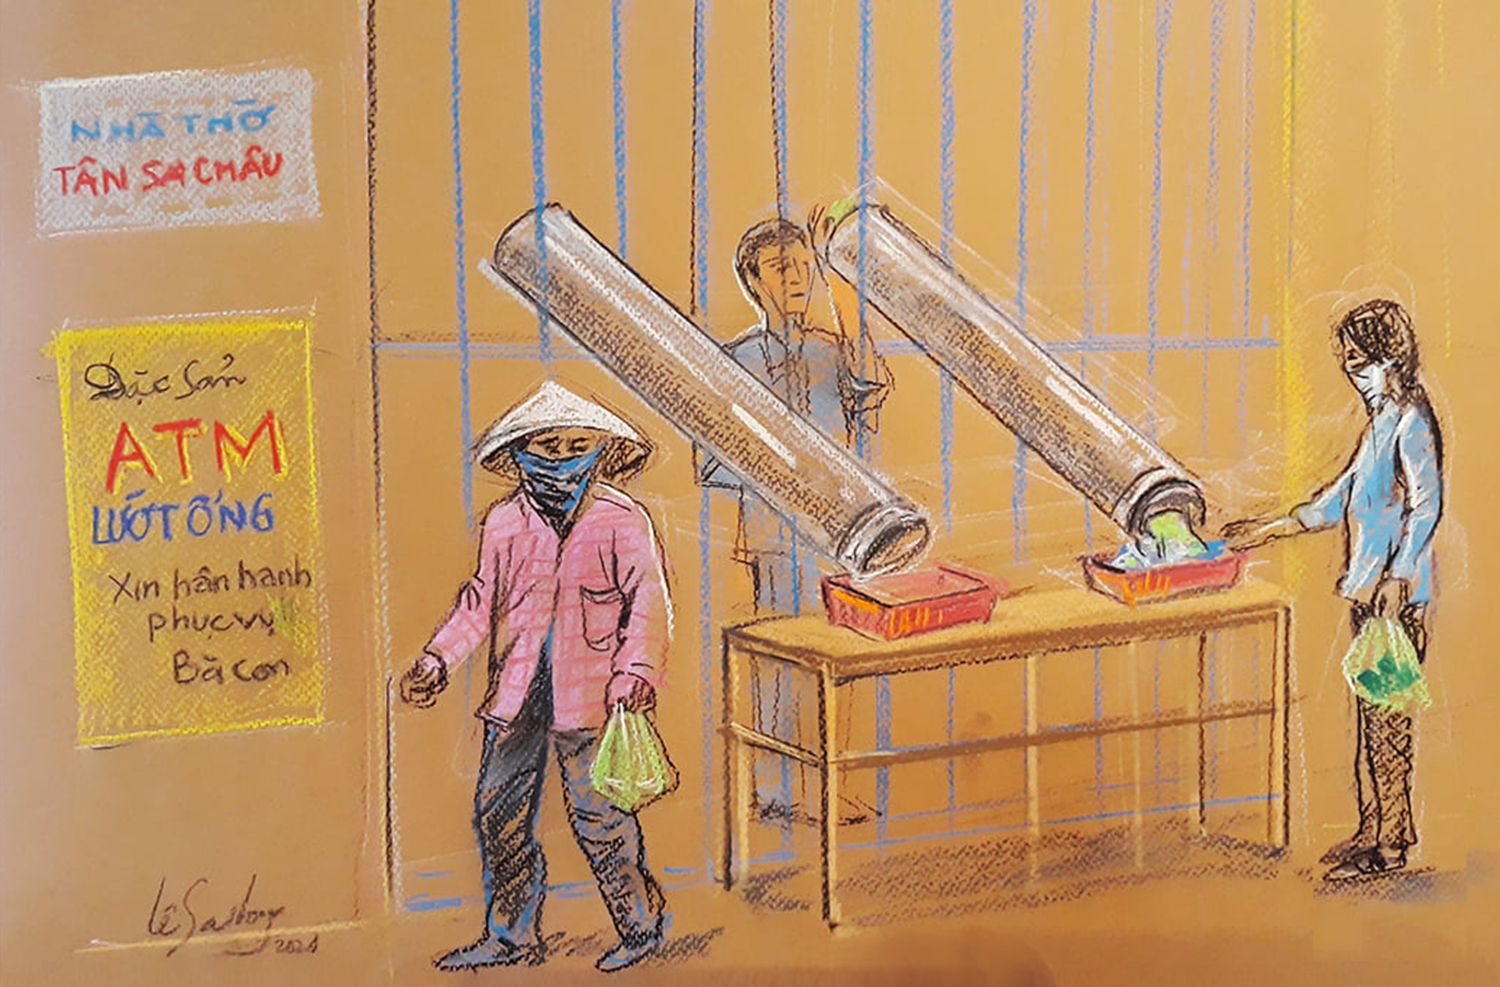 ATM lướt ống - sáng kiến của người dân nhà thờ Tân Sa Châu trên đường Lê Văn Sĩ chuyển nhu yếu phẩm ra ngoài cho người dân nghèo bằng hai chiếc ống nhựa để đảm bảo an toàn mùa dịch.